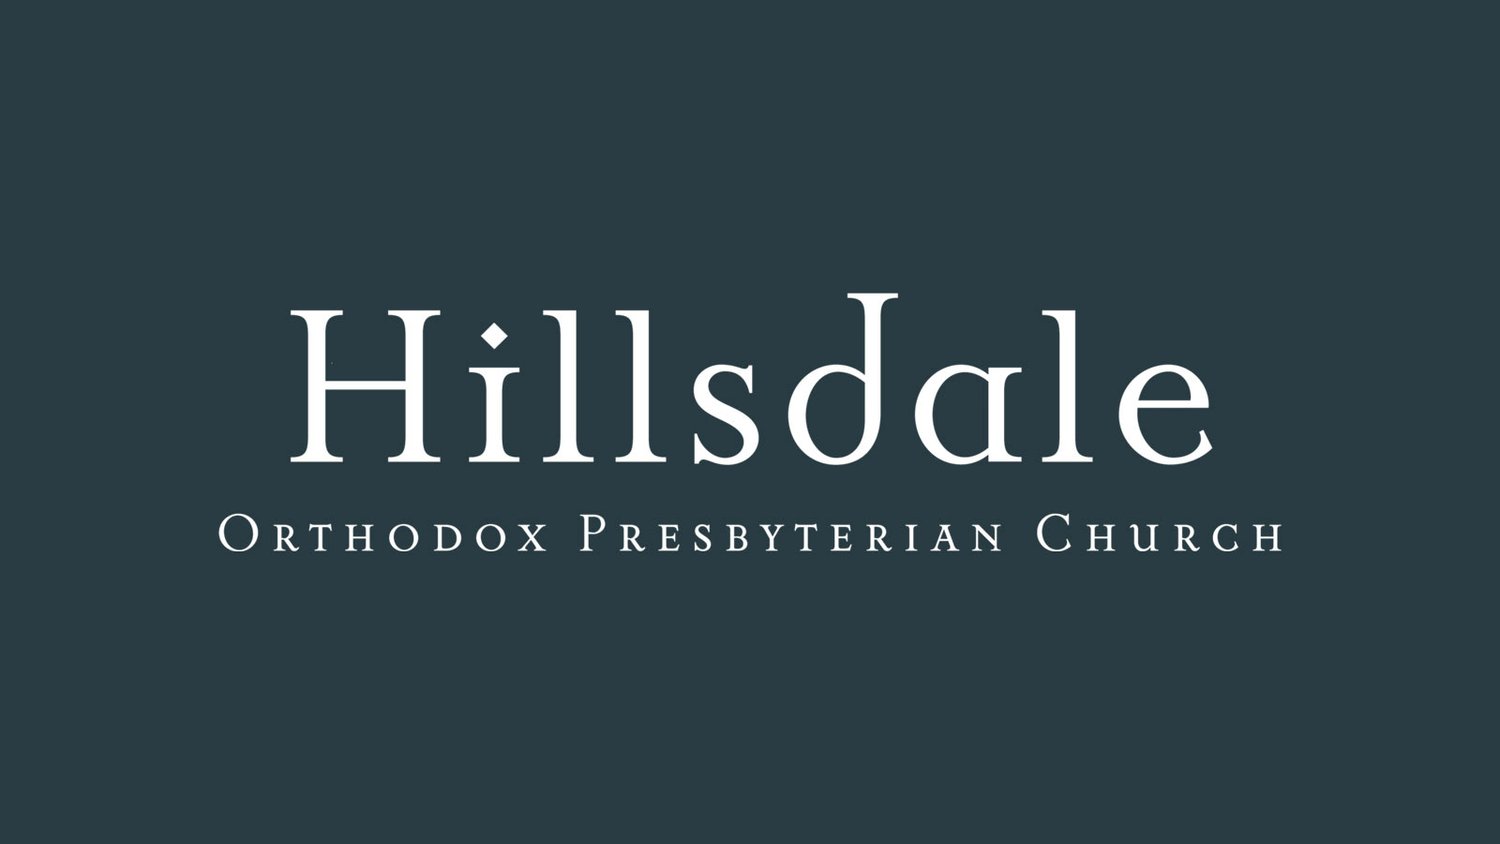 Hillsdale Orthodox Presbyterian Church